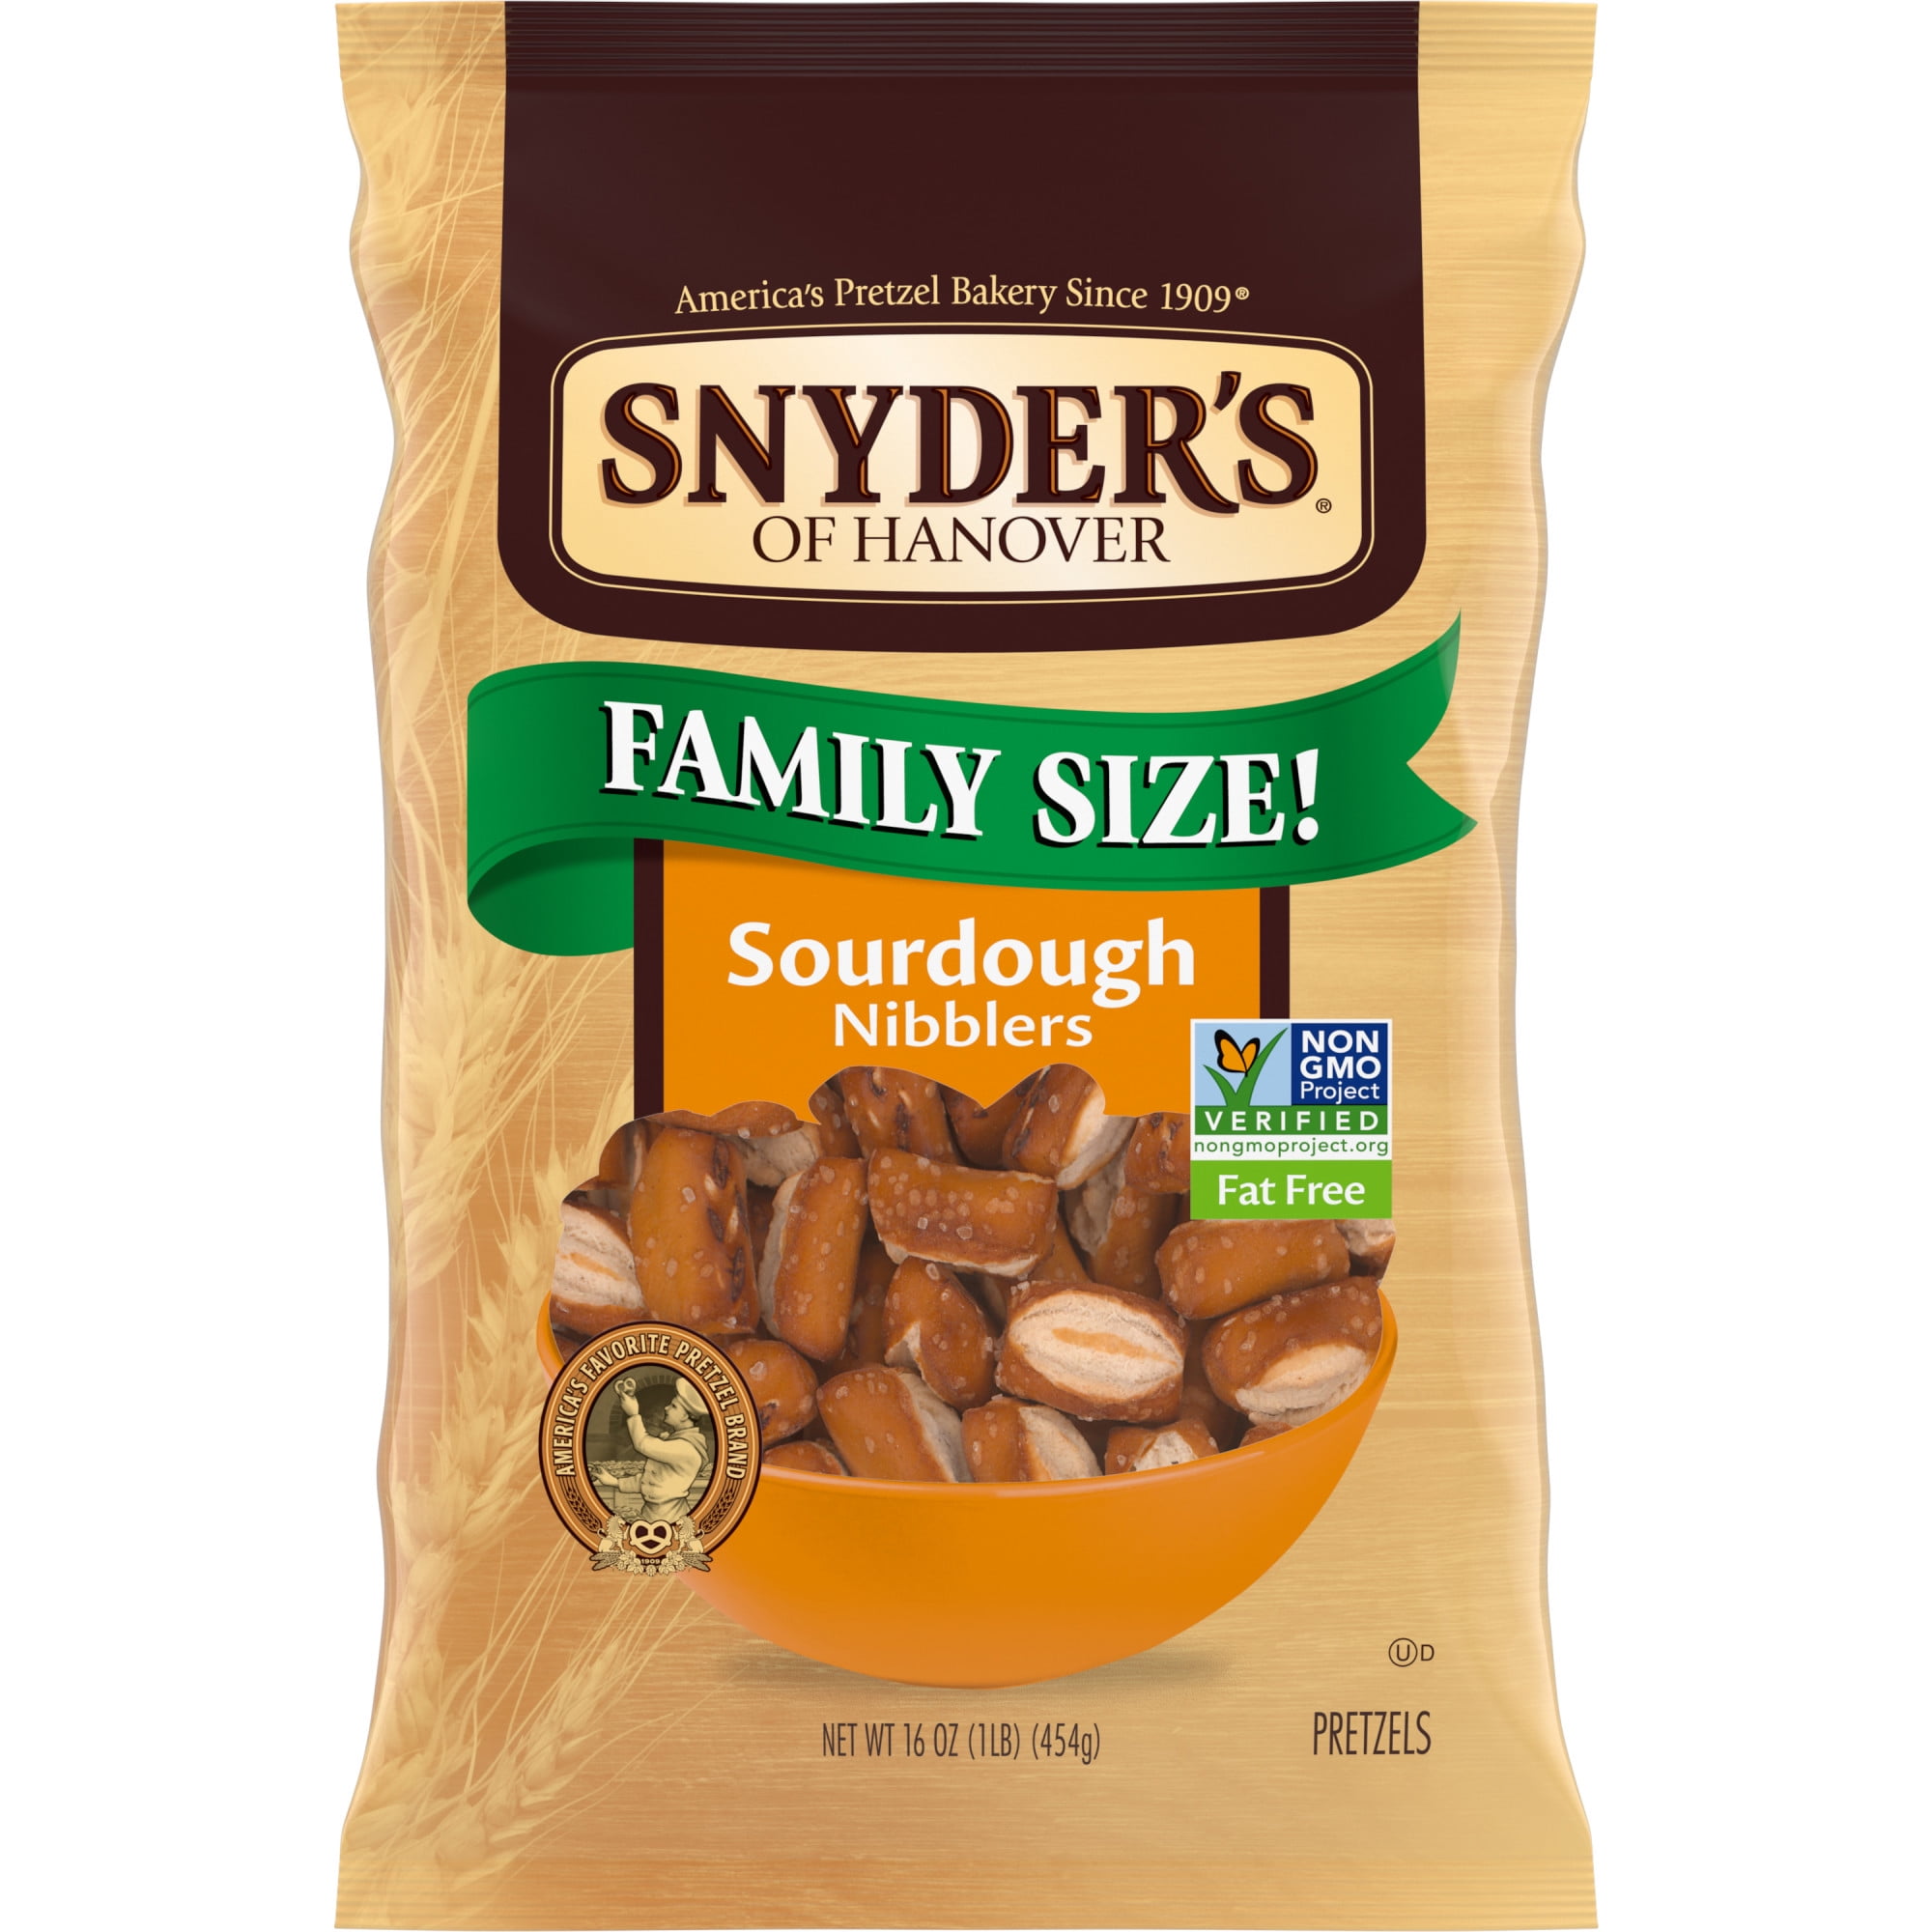 Snyder's of Hanover Pretzels, Sourdough Nibblers, Family Size 16 oz Bag